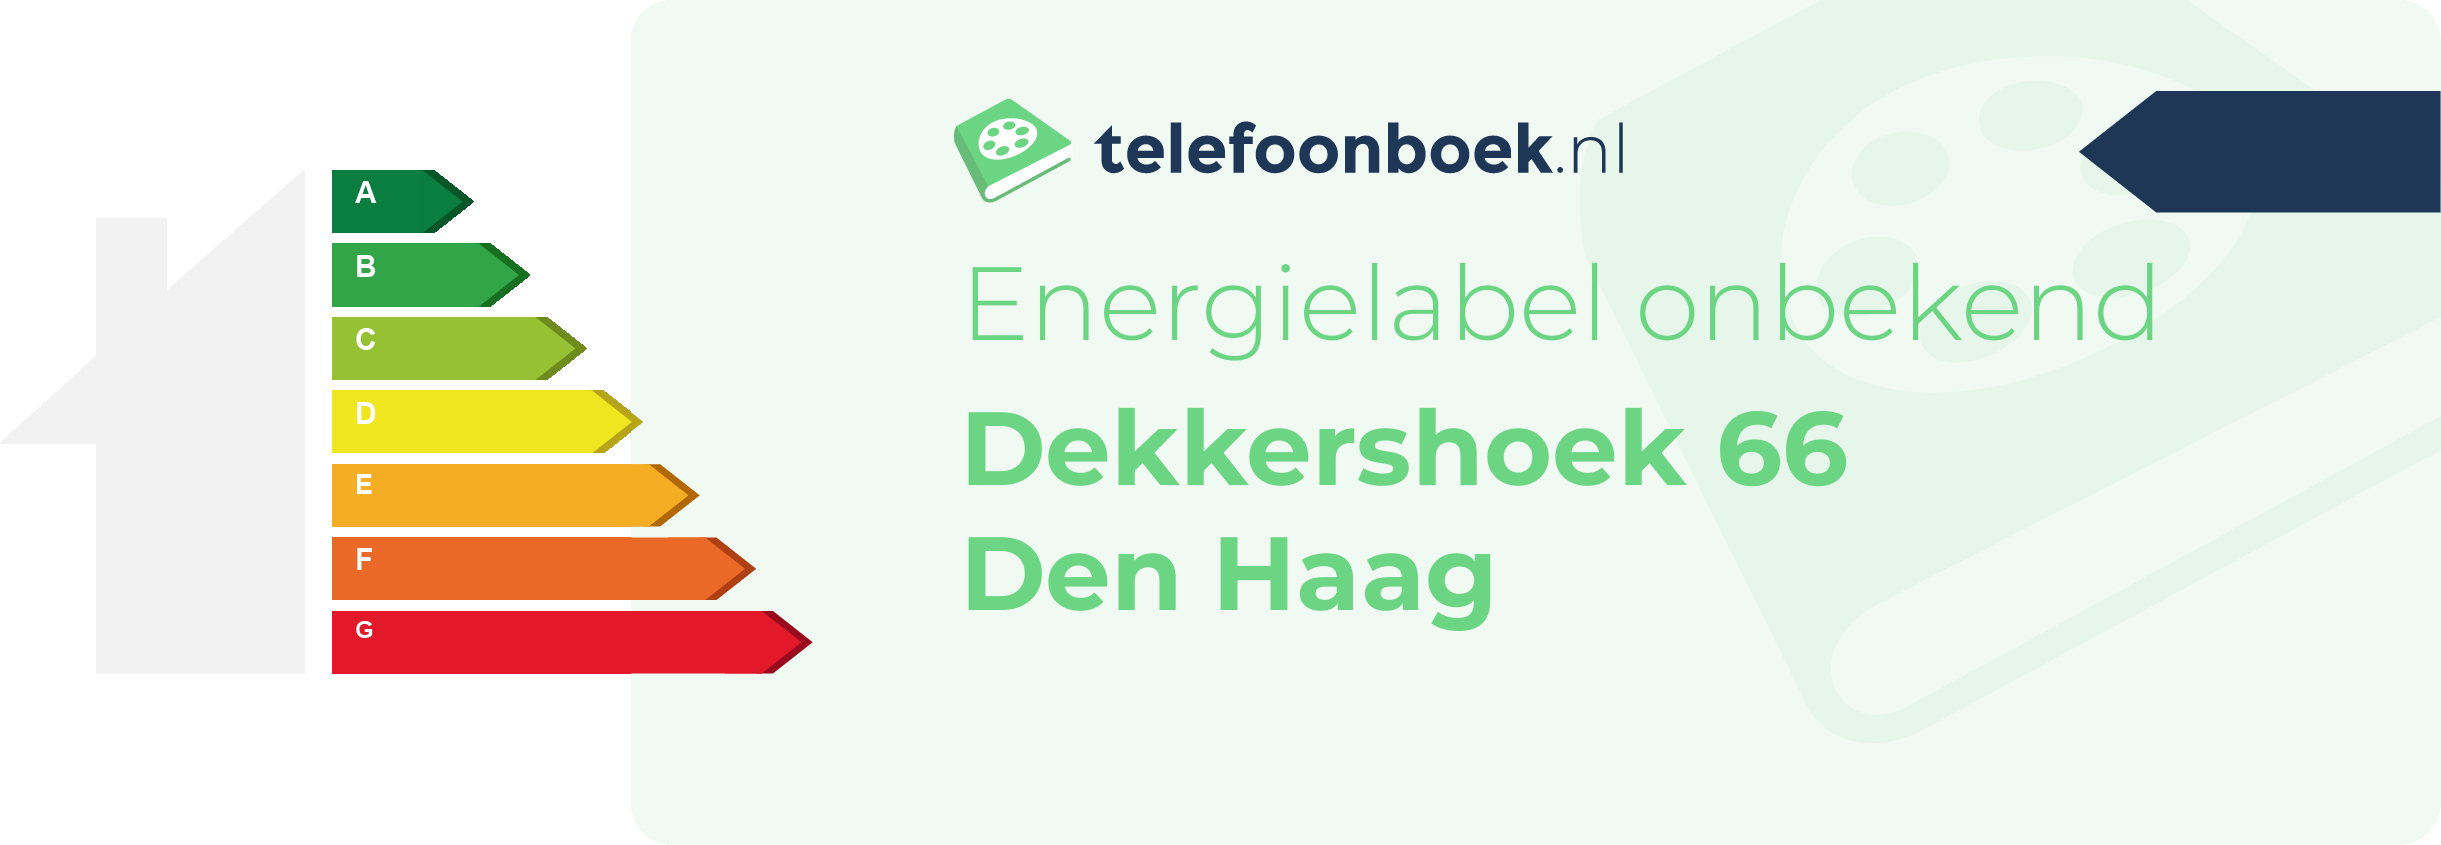 Energielabel Dekkershoek 66 Den Haag